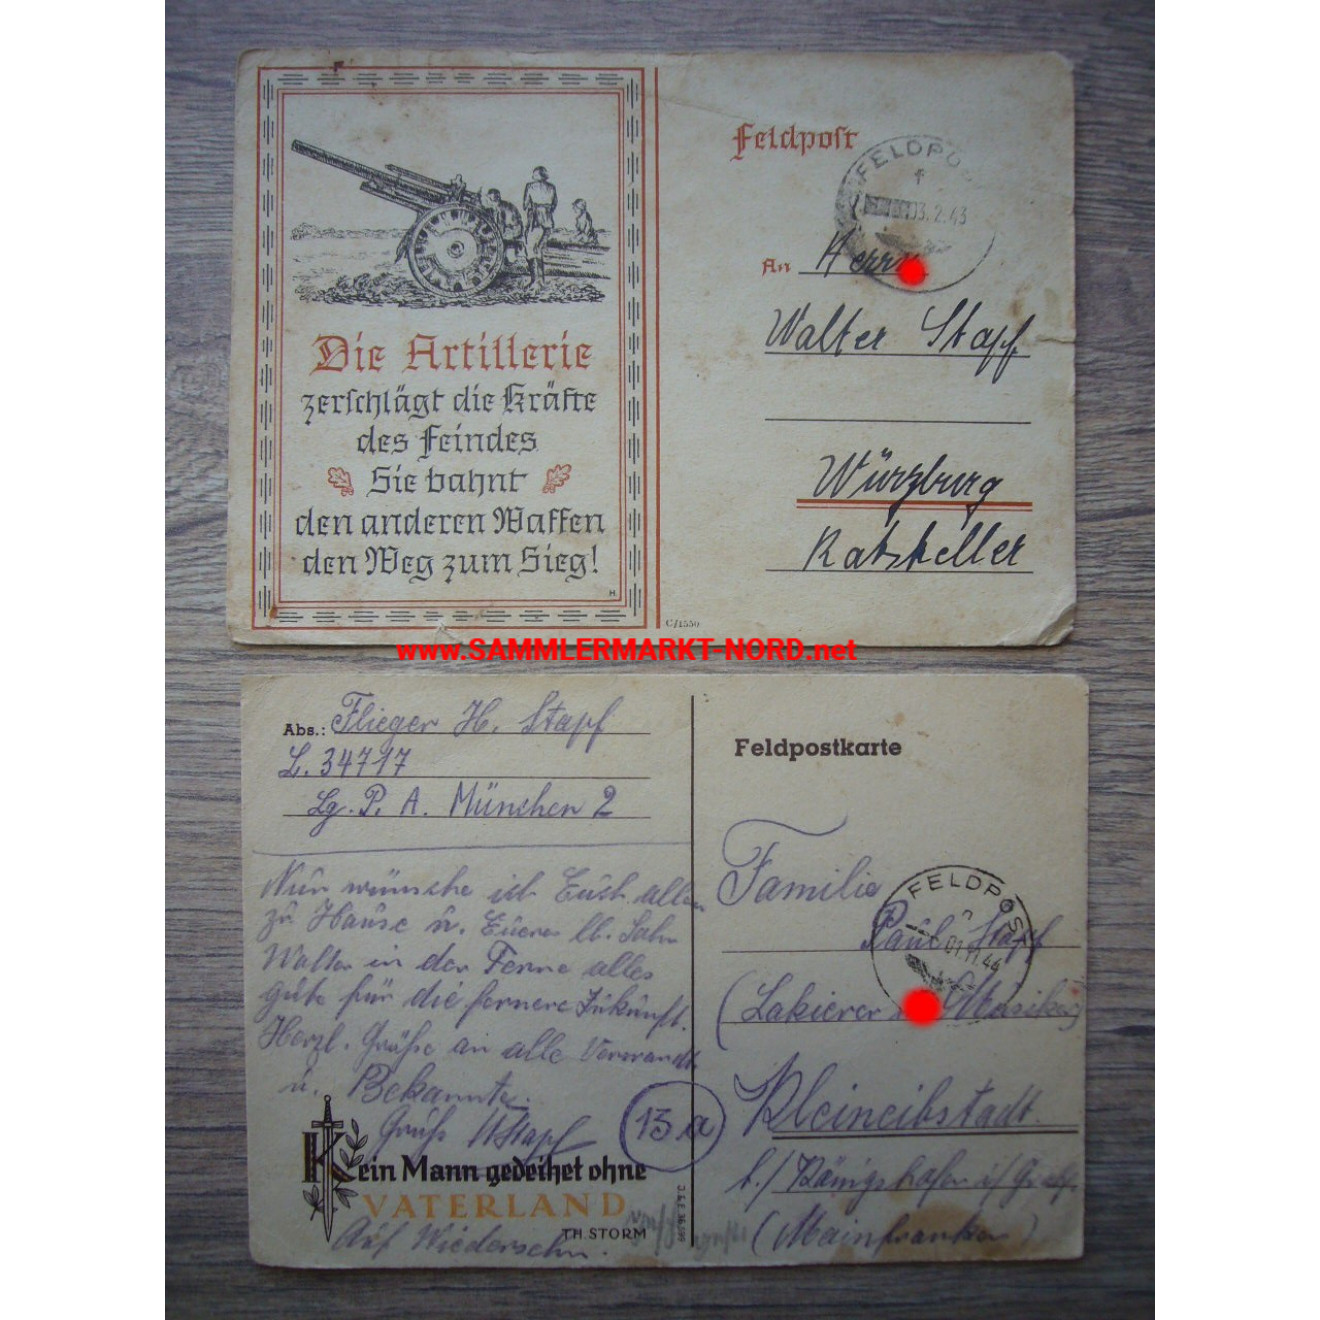 2 x Feldpostkarte - Die Artillerie & Propagandaspruch